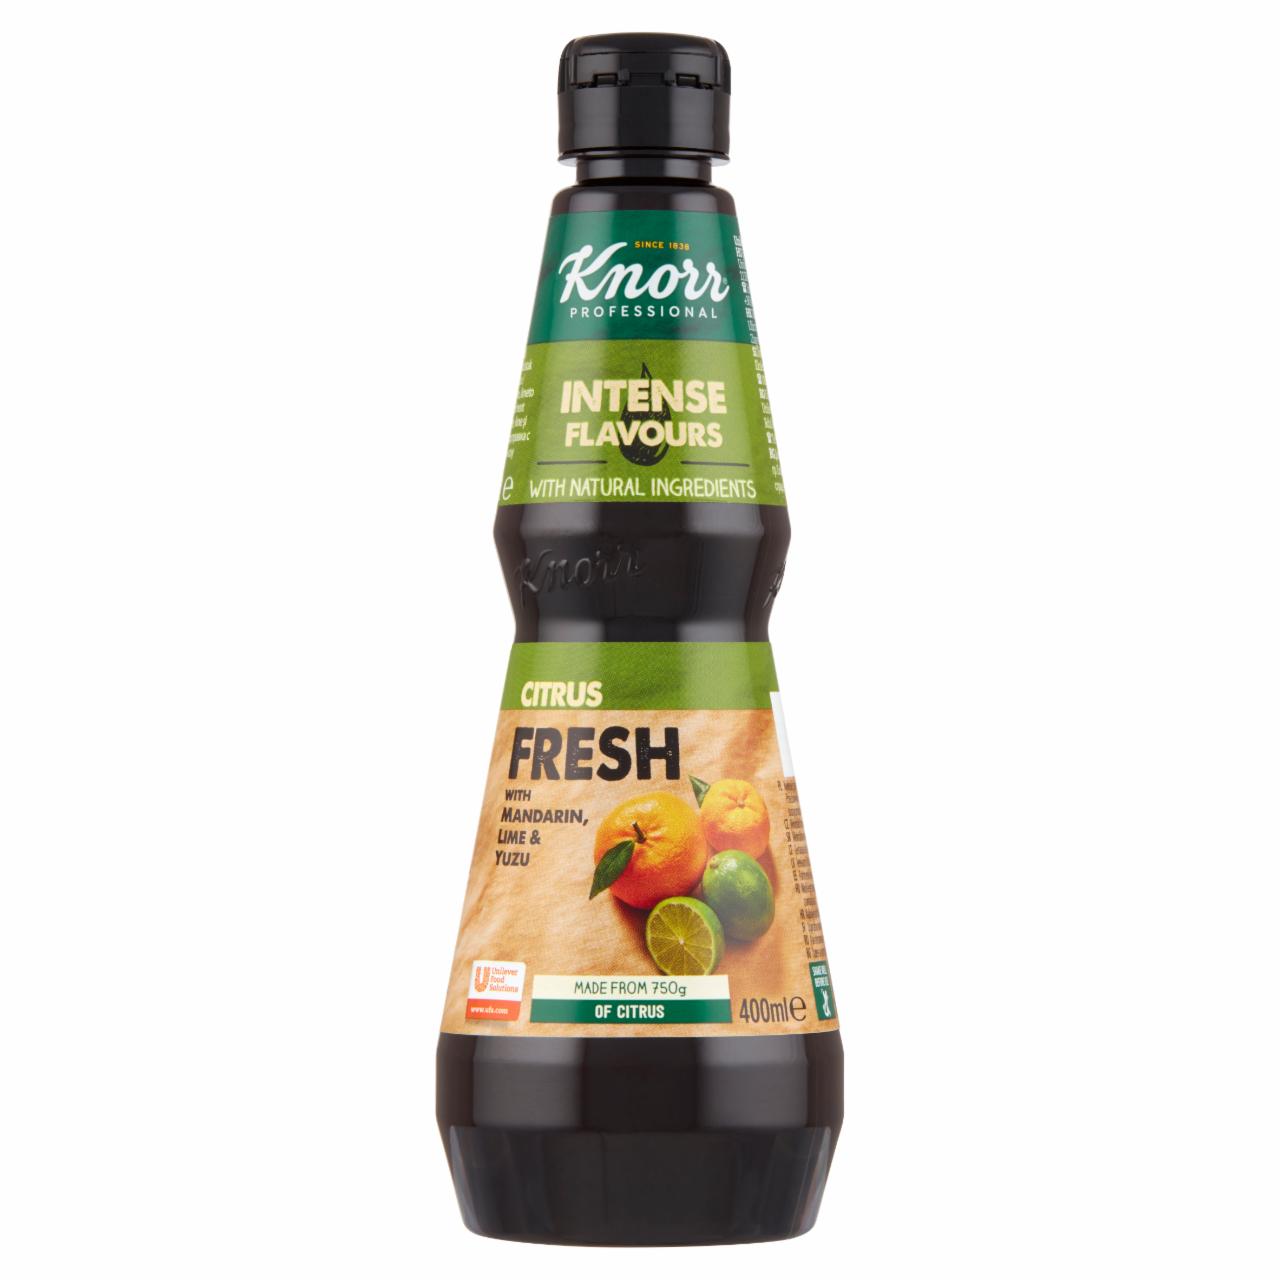 Zdjęcia - Knorr Professional Przyprawa cytrusowa w płynie z sokiem z mandarynki limonki i owoców Yuzu 400 ml